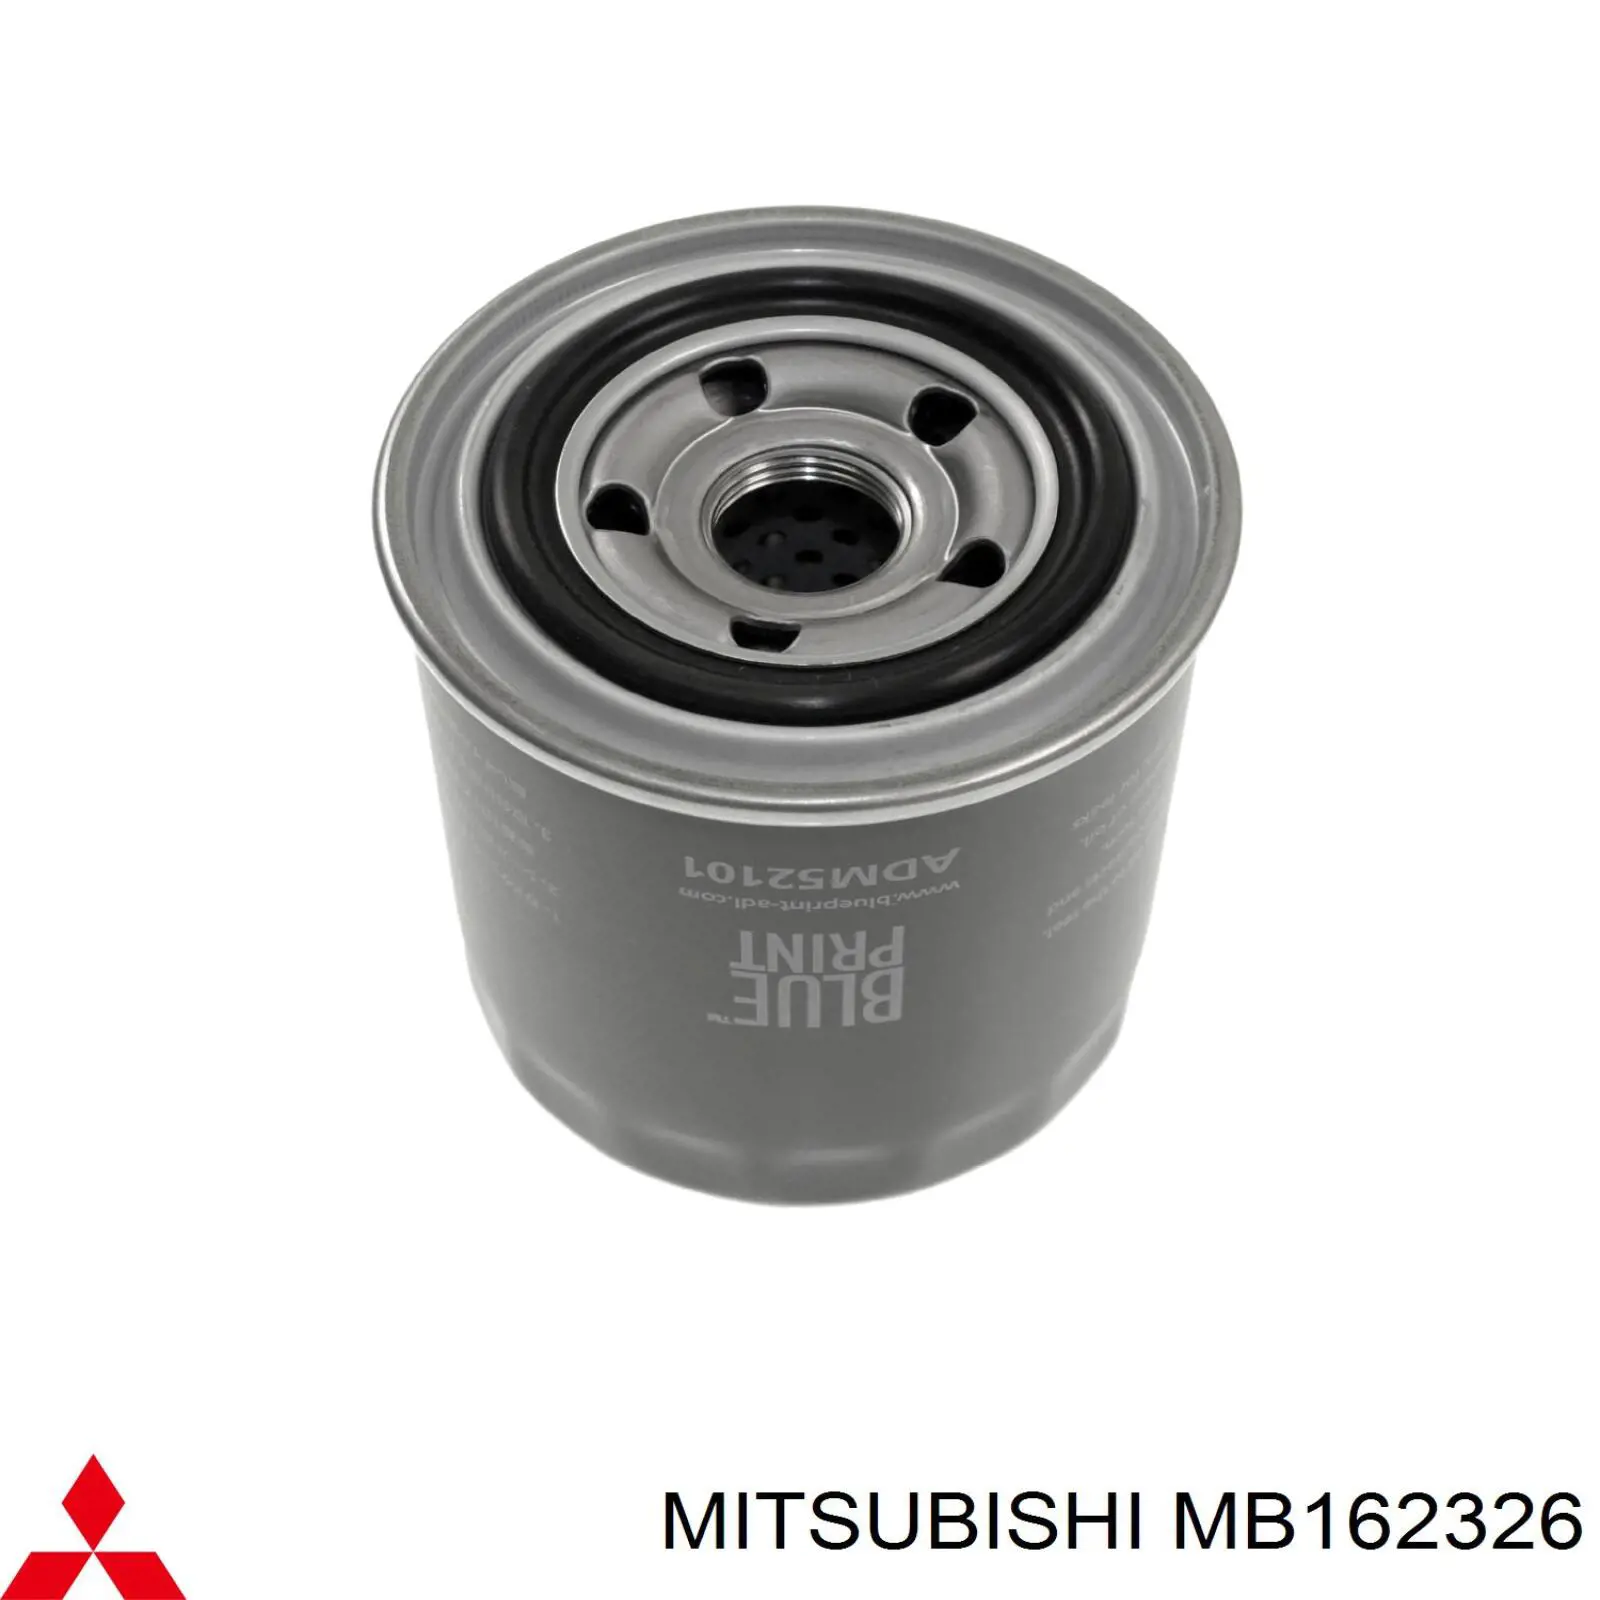 MB162326 Mitsubishi filtro de aceite